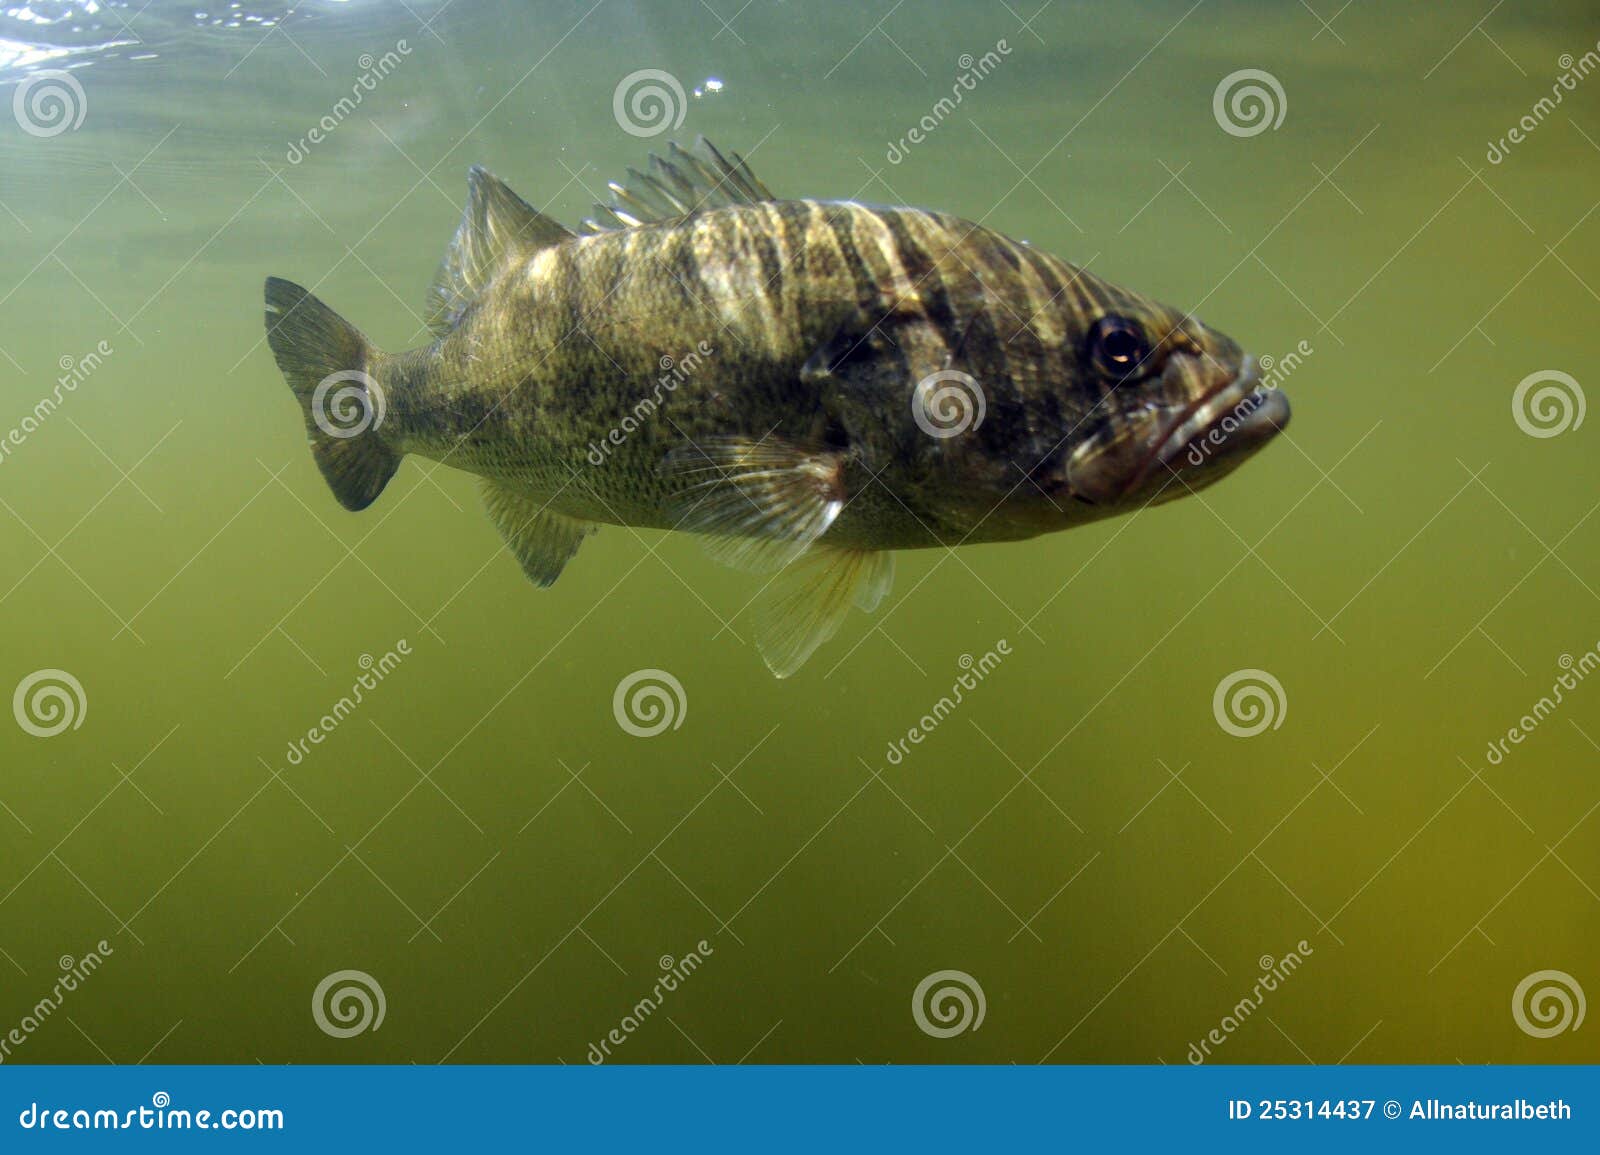 largemouth bass fish